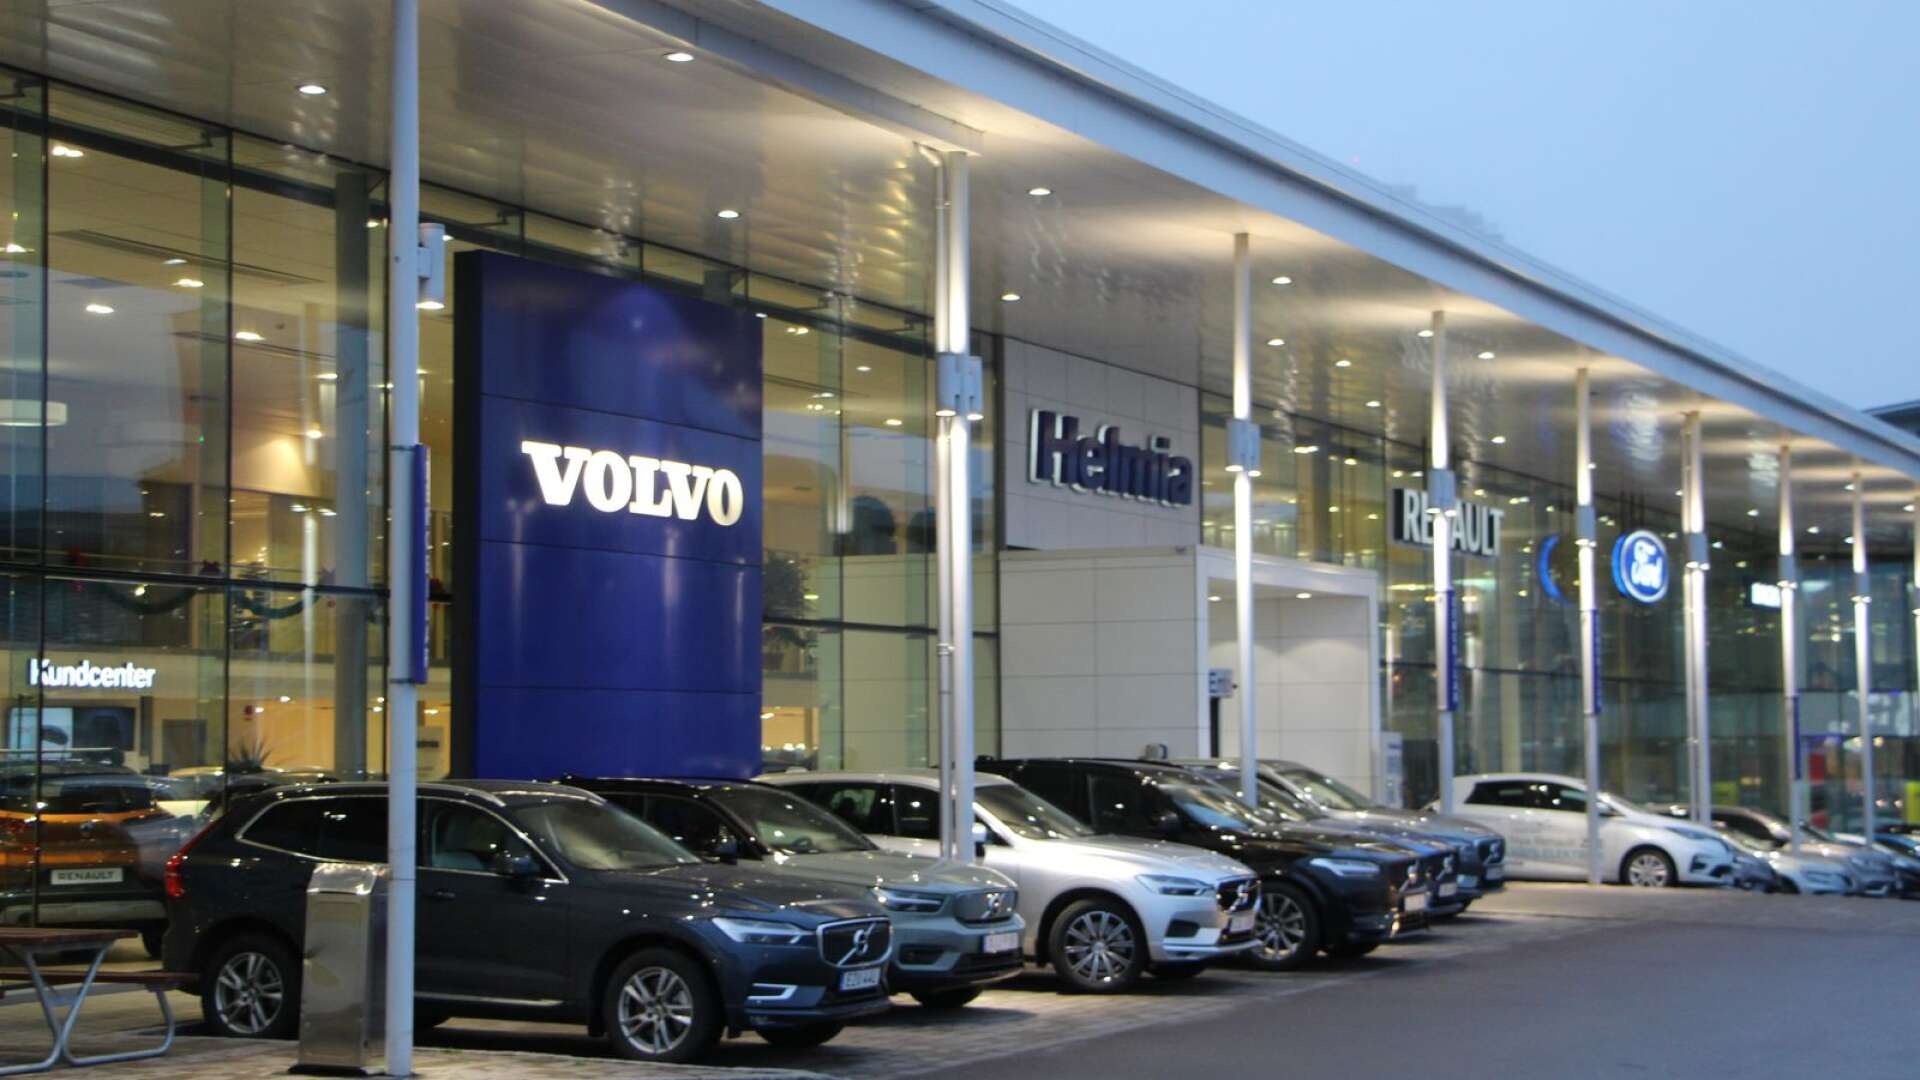 Helmias vd Henrik Forsberg är inte orolig för framtiden trots att Volvo för några dagar sedan sade upp försäljningsavtalet med den stora återförsäljaren Bilia.